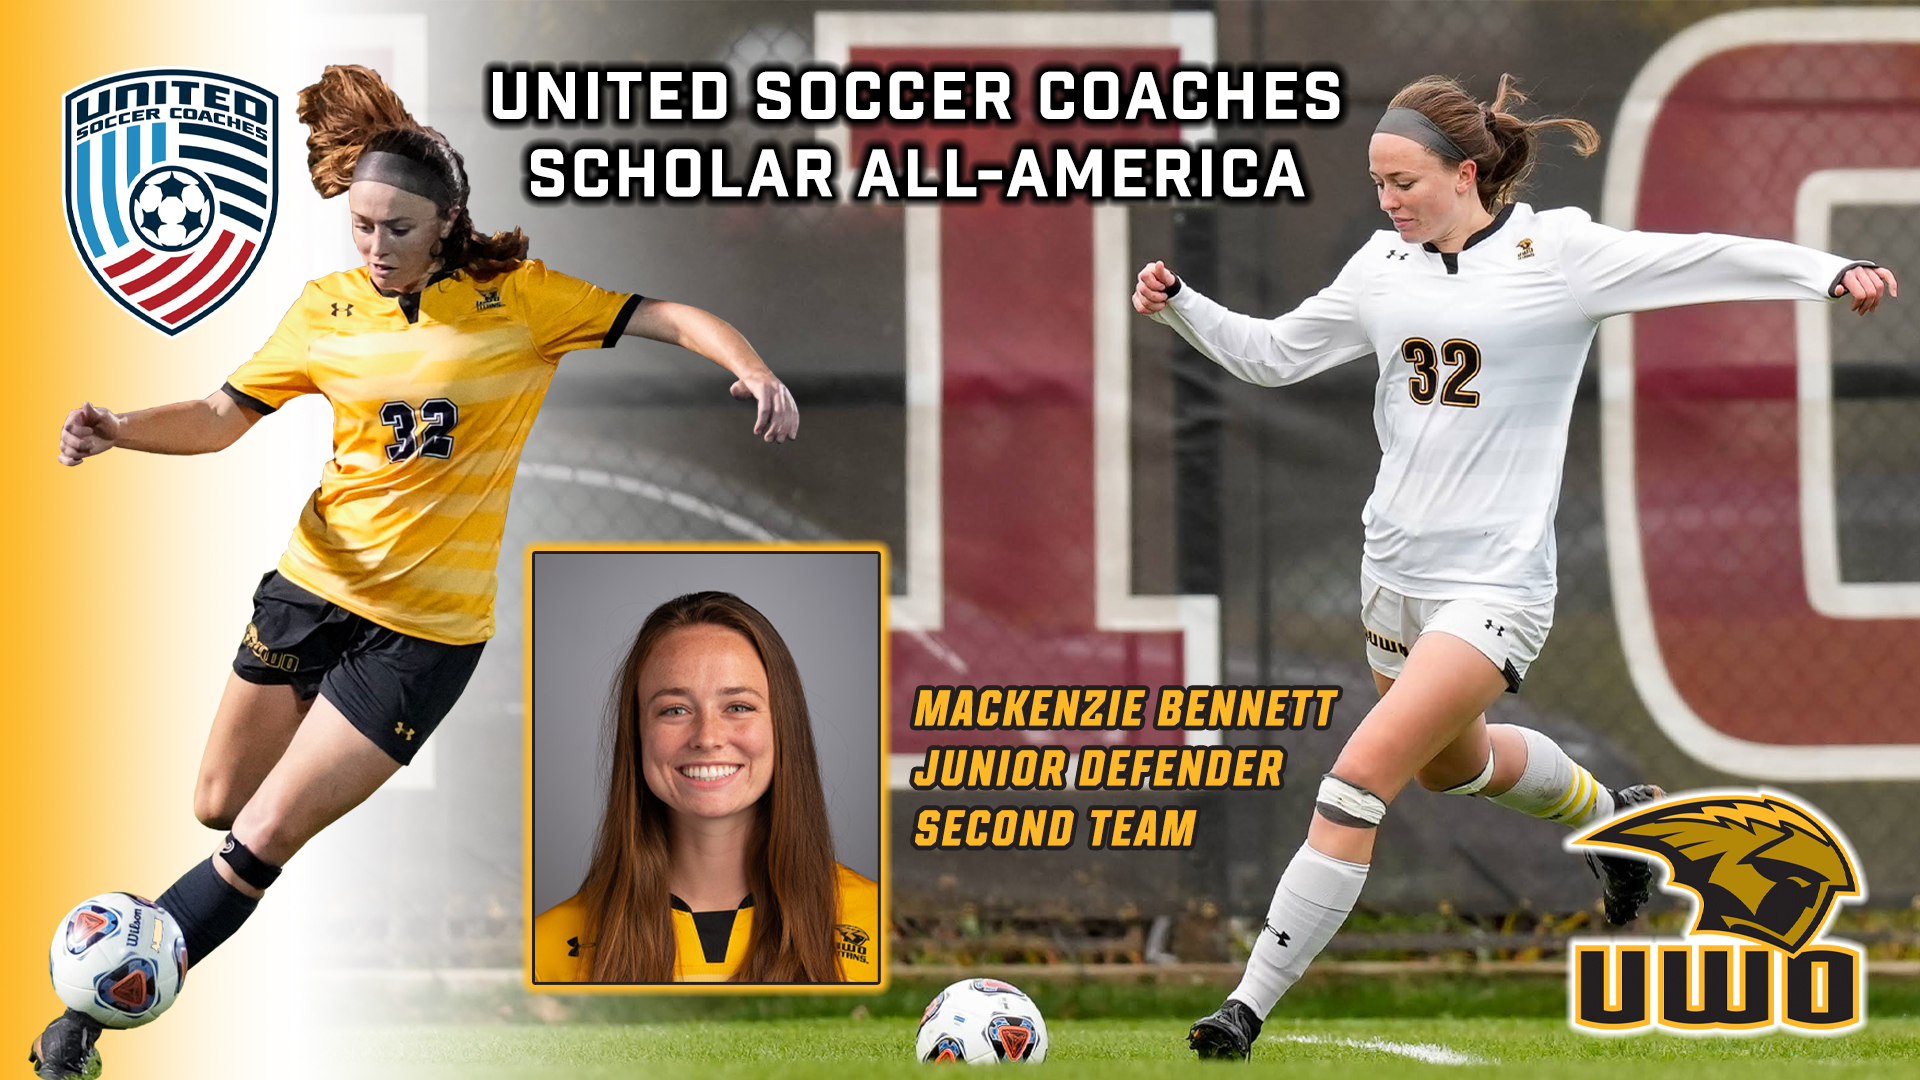 Bennett Receives Soccer Scholar All-America Honors